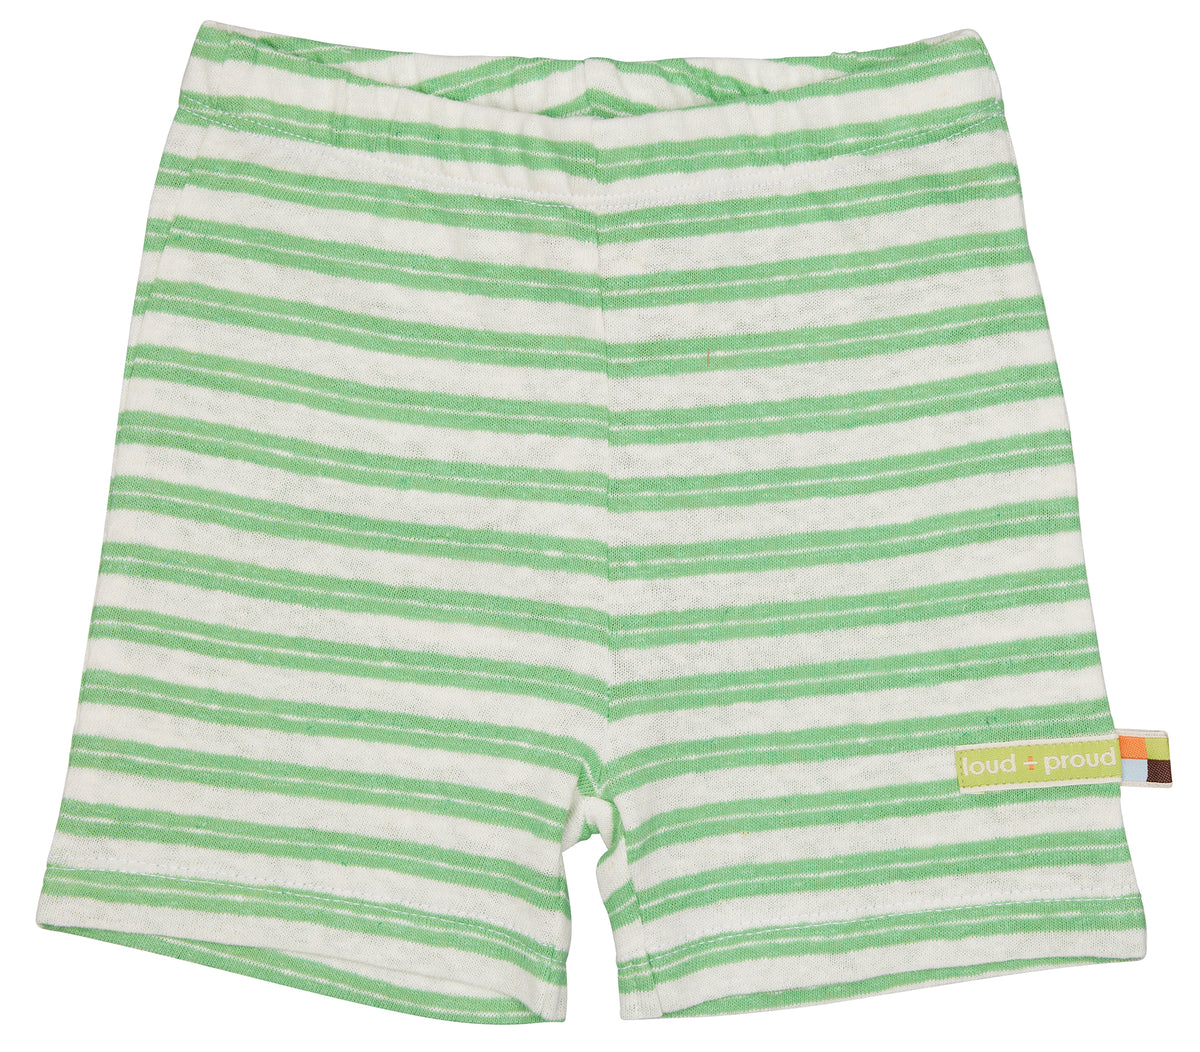 Shorts in grün/weiss gestreift von loud+proud